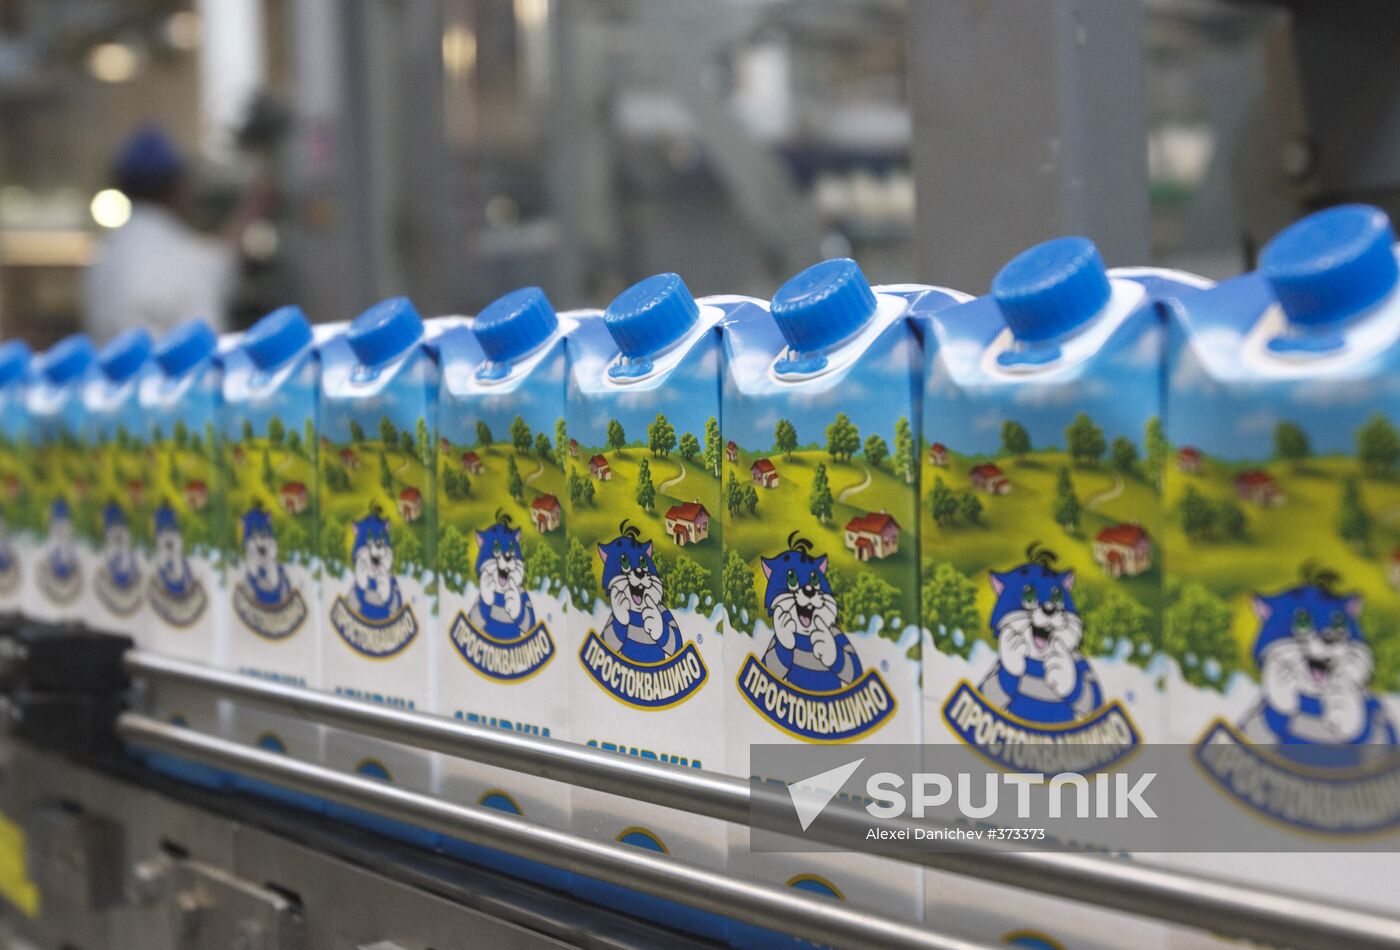 Dairy farm Petmol in St. Petersburg